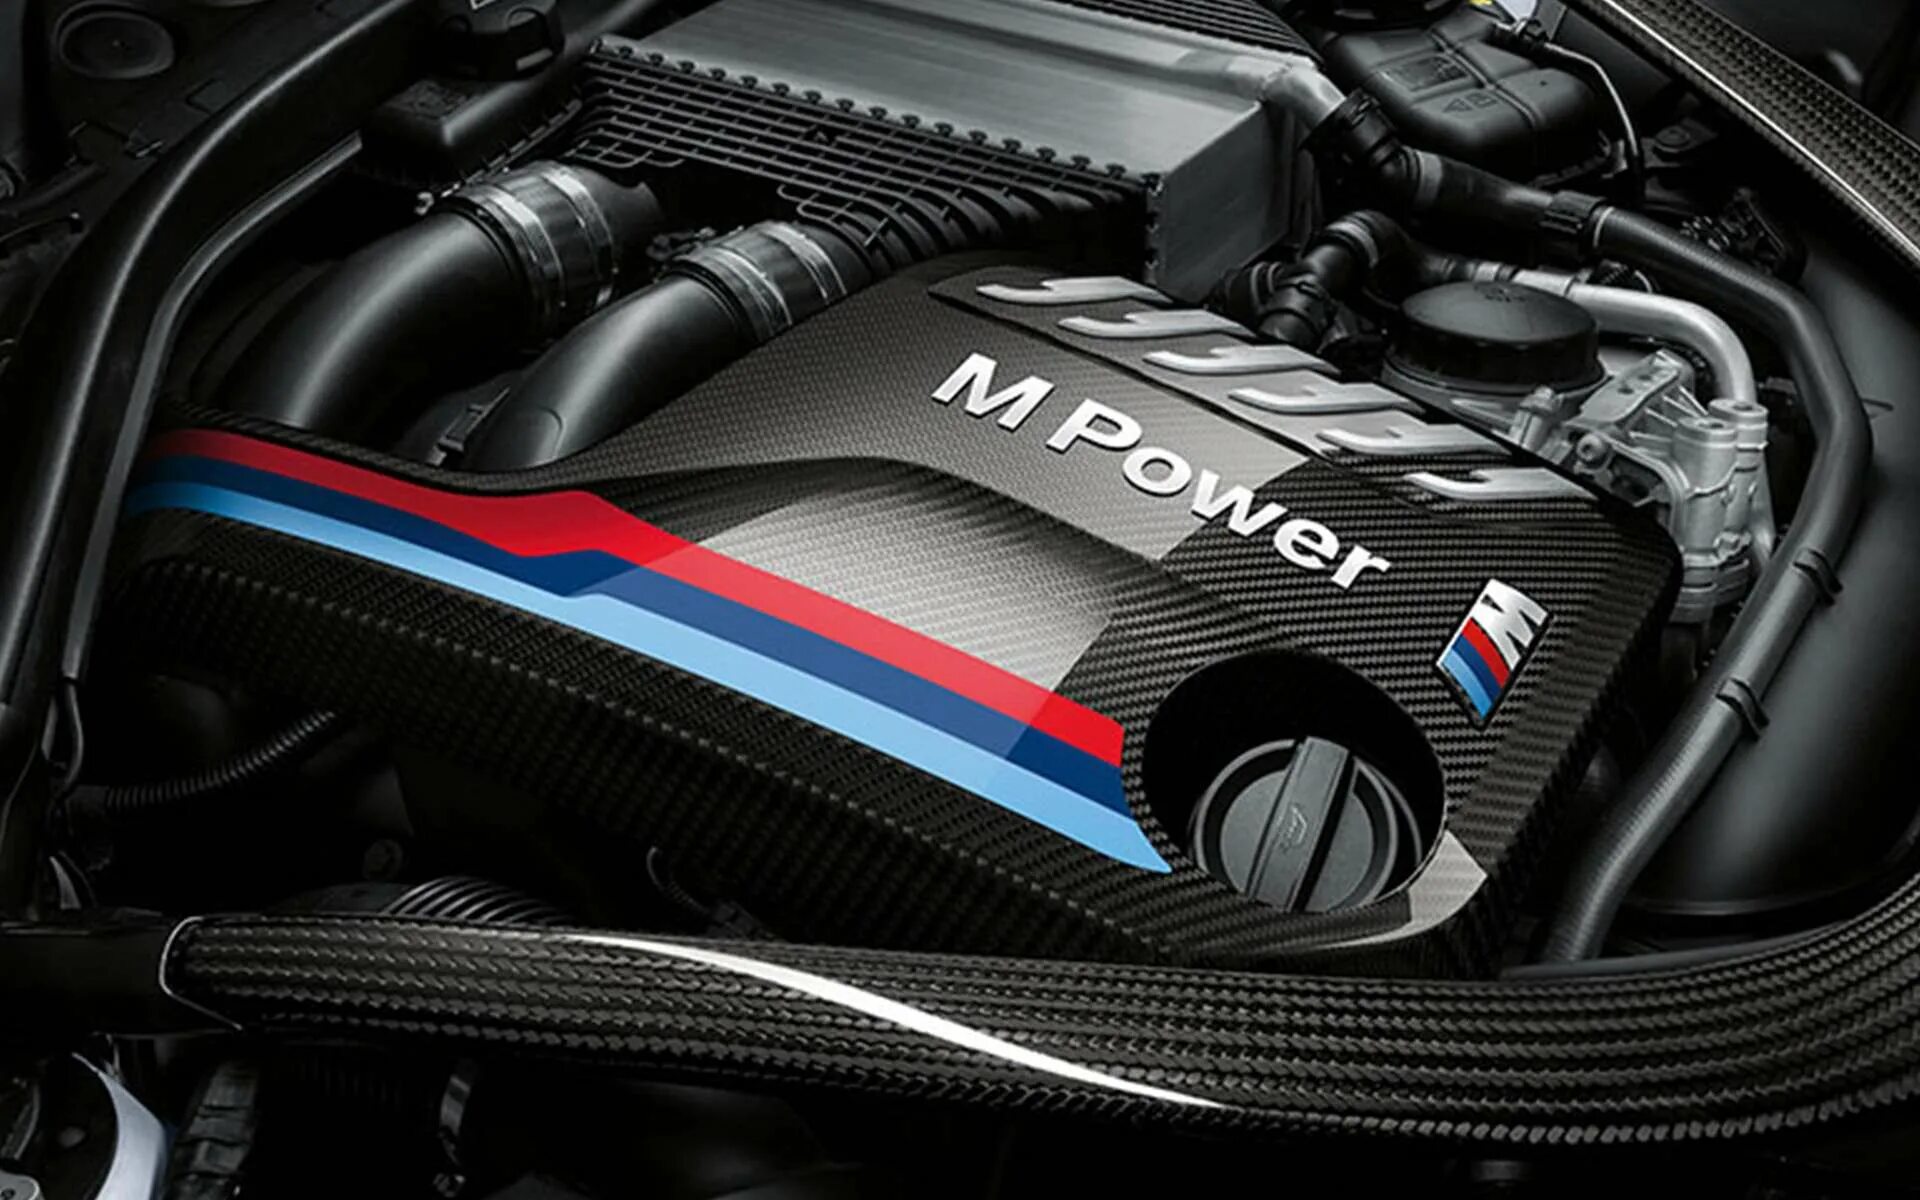 Bmw m power. БМВ м4 мотор. BMW m2 двигатель Carbon. M Power BMW Performance. BMW M f82 мотор.